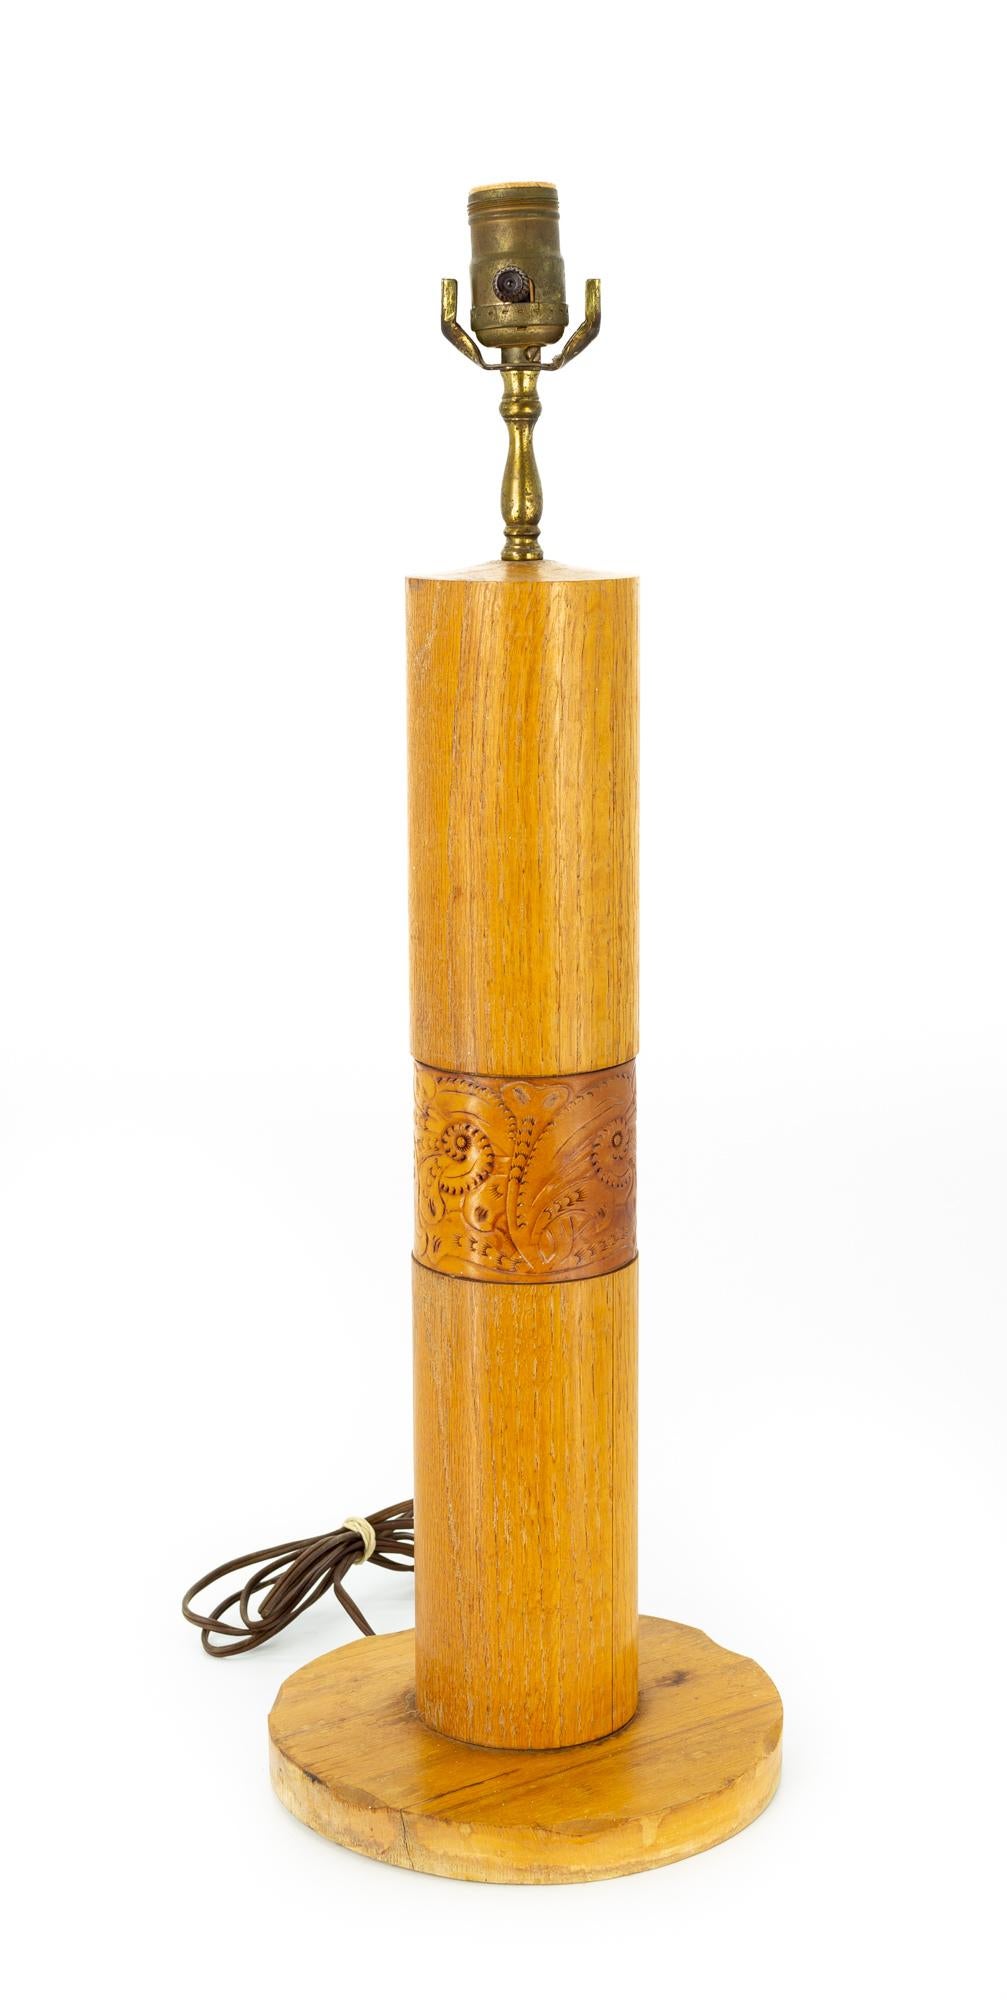 Fin du 20e siècle Bradley - Paire de lampes de bureau mi-siècle en chêne et cuir, fabrication artisanale en vente